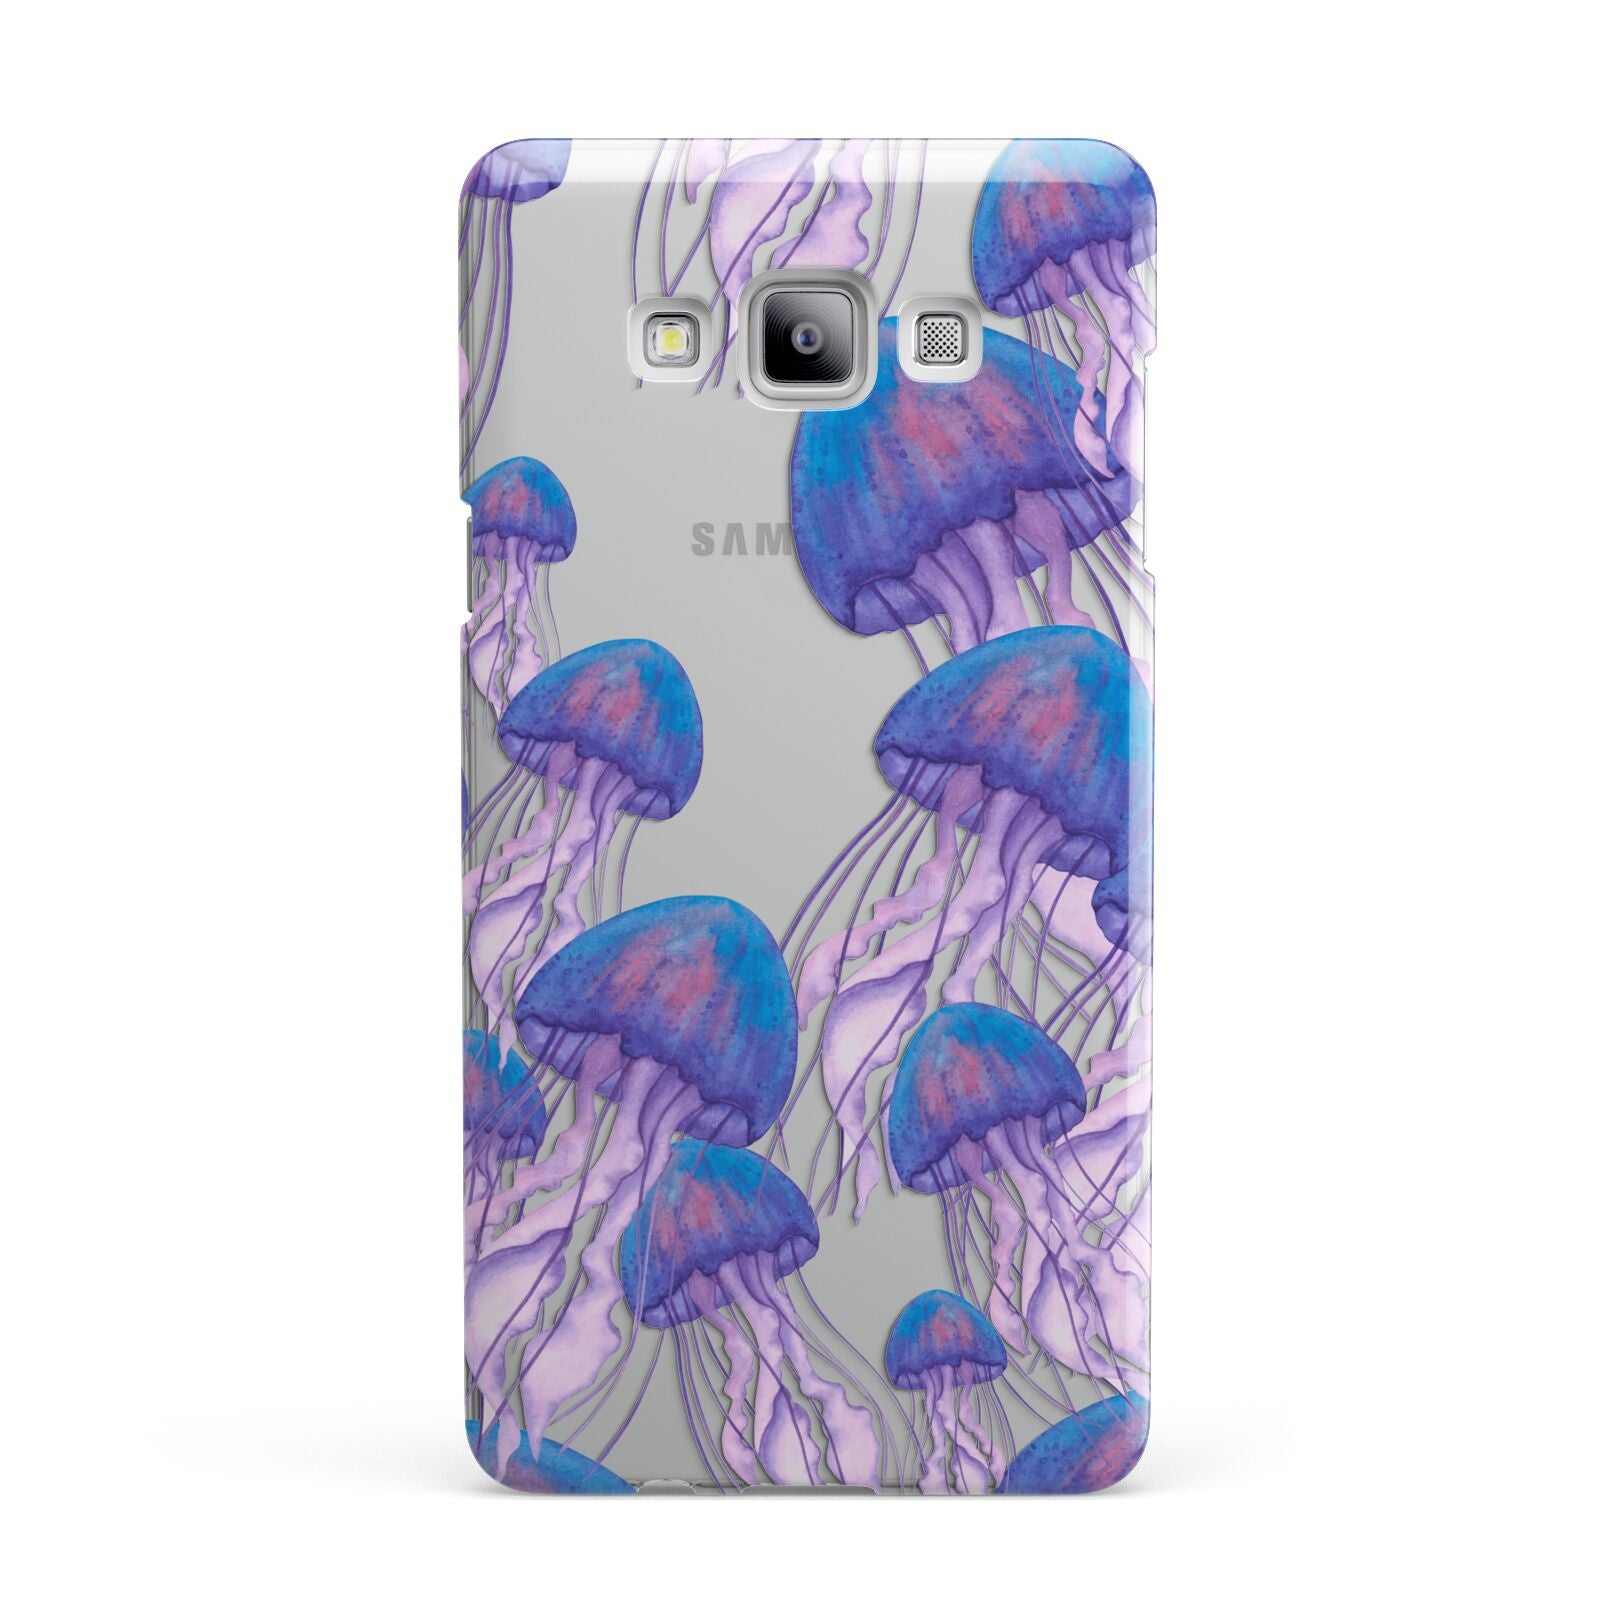 Jellyfish Samsung Galaxy A7 2015 Case